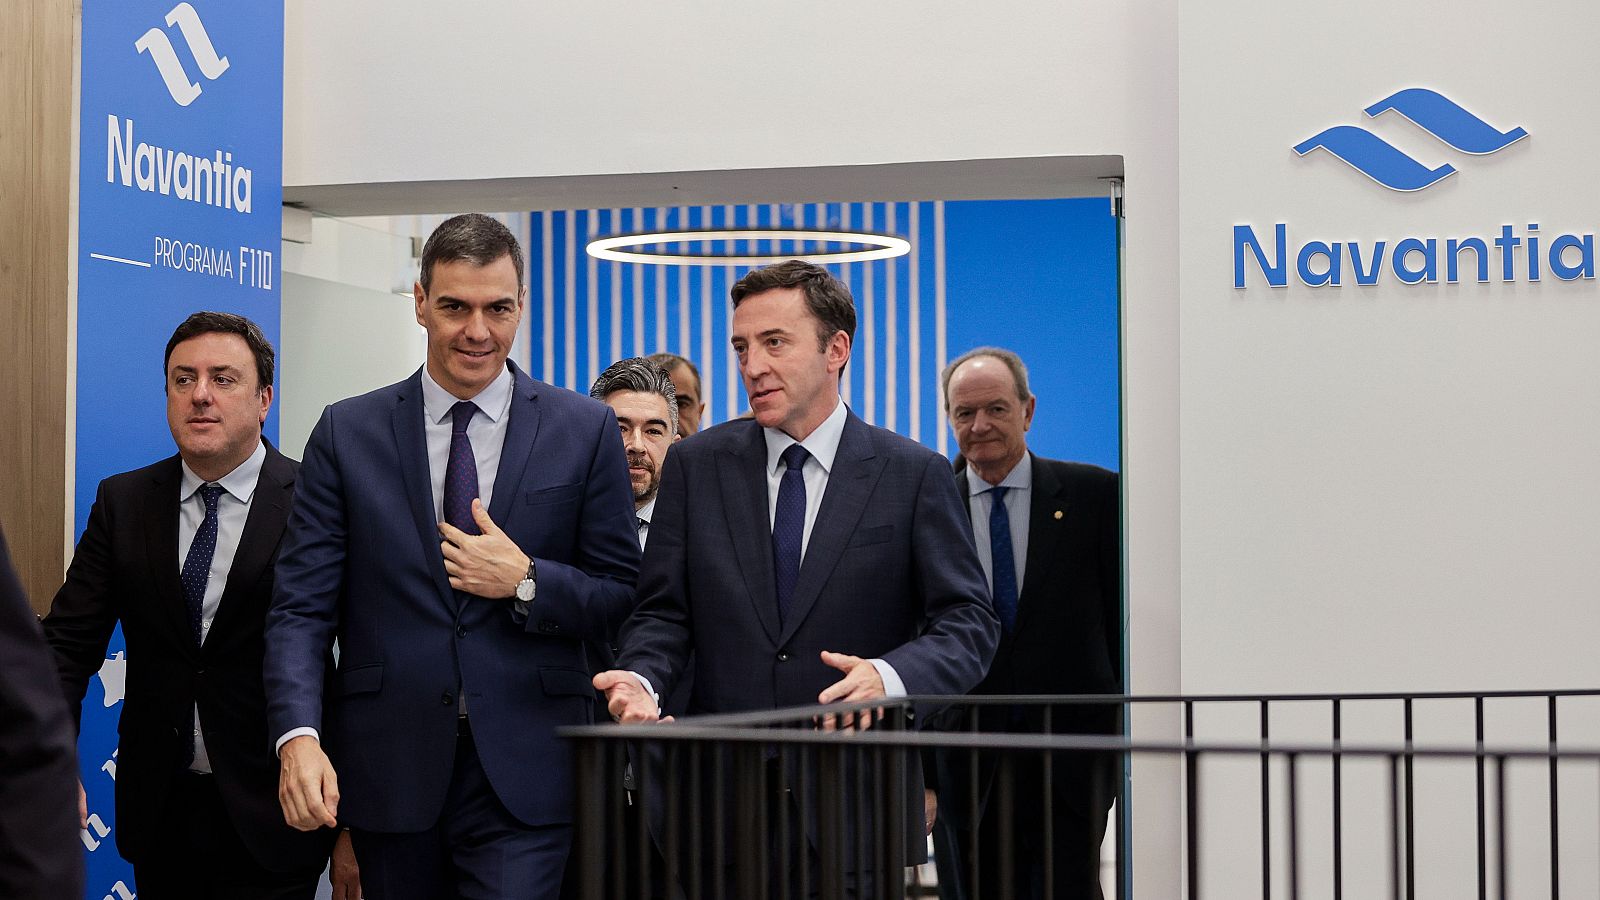 El presidente del Gobierno, Pedro Sánchez, junto con el presidente de Navantia, Ricardo Domínguez, durante su visita al astillero de Navantia en Ferrol.